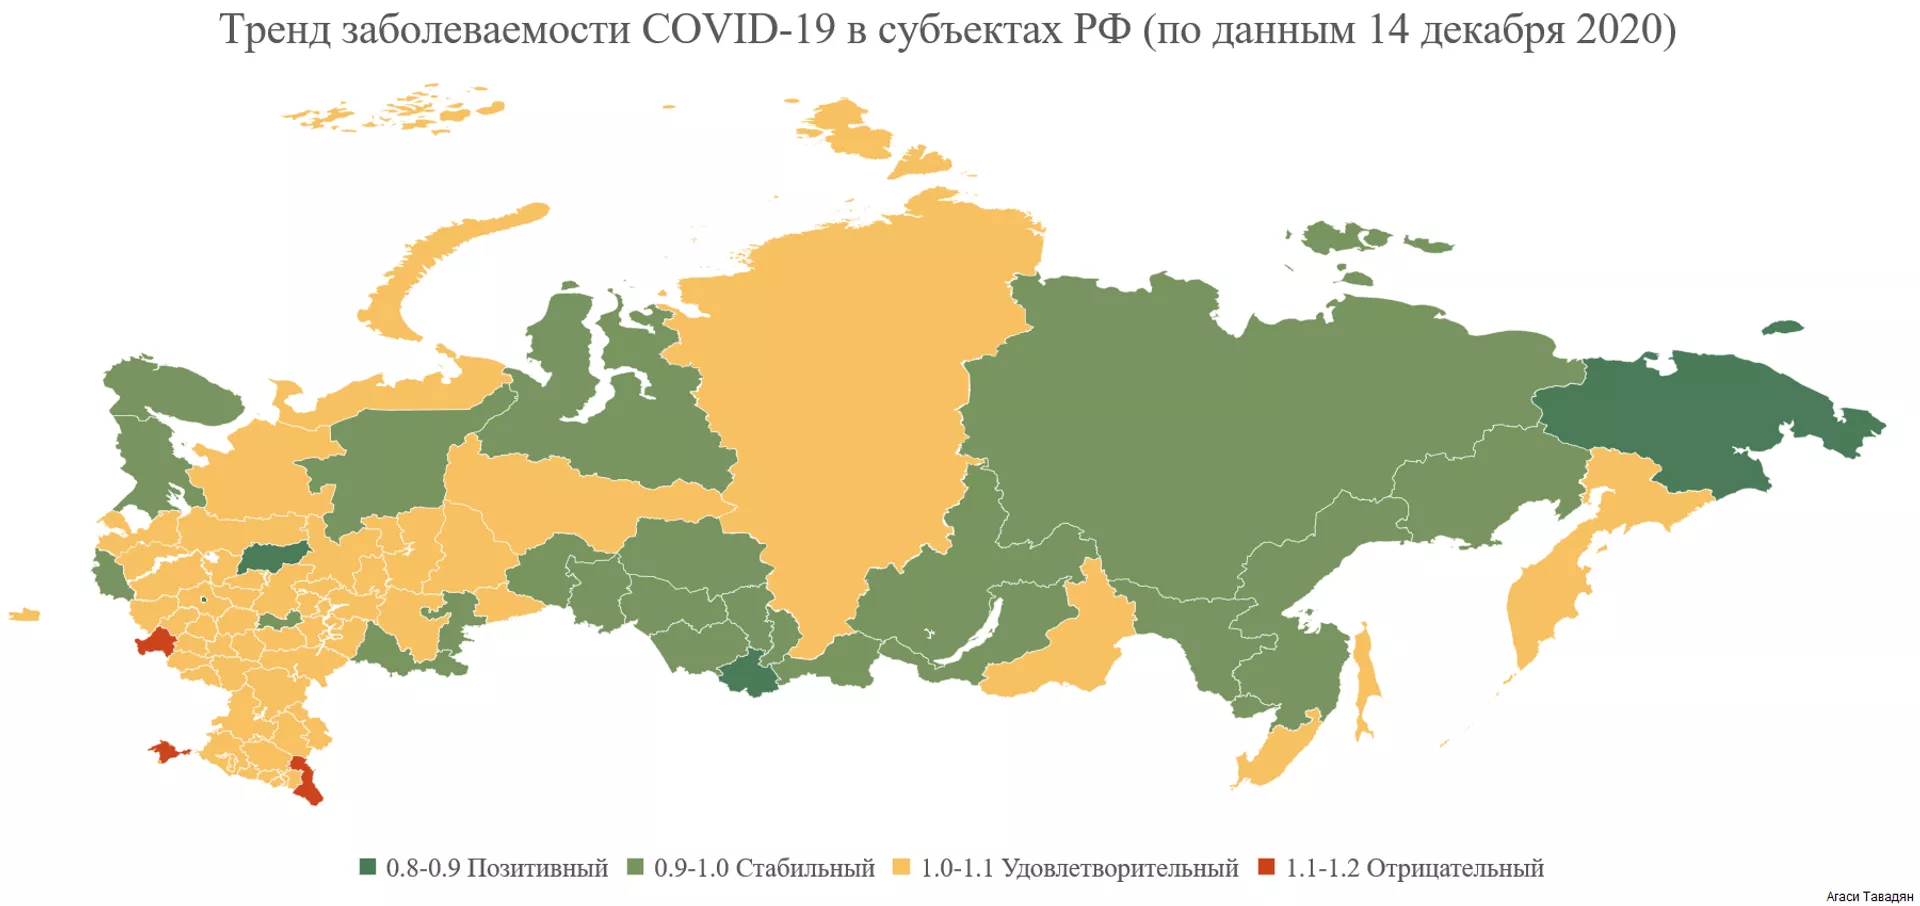 Ни один регион не находится в «тяжёлой» зоне: ковидная карта России